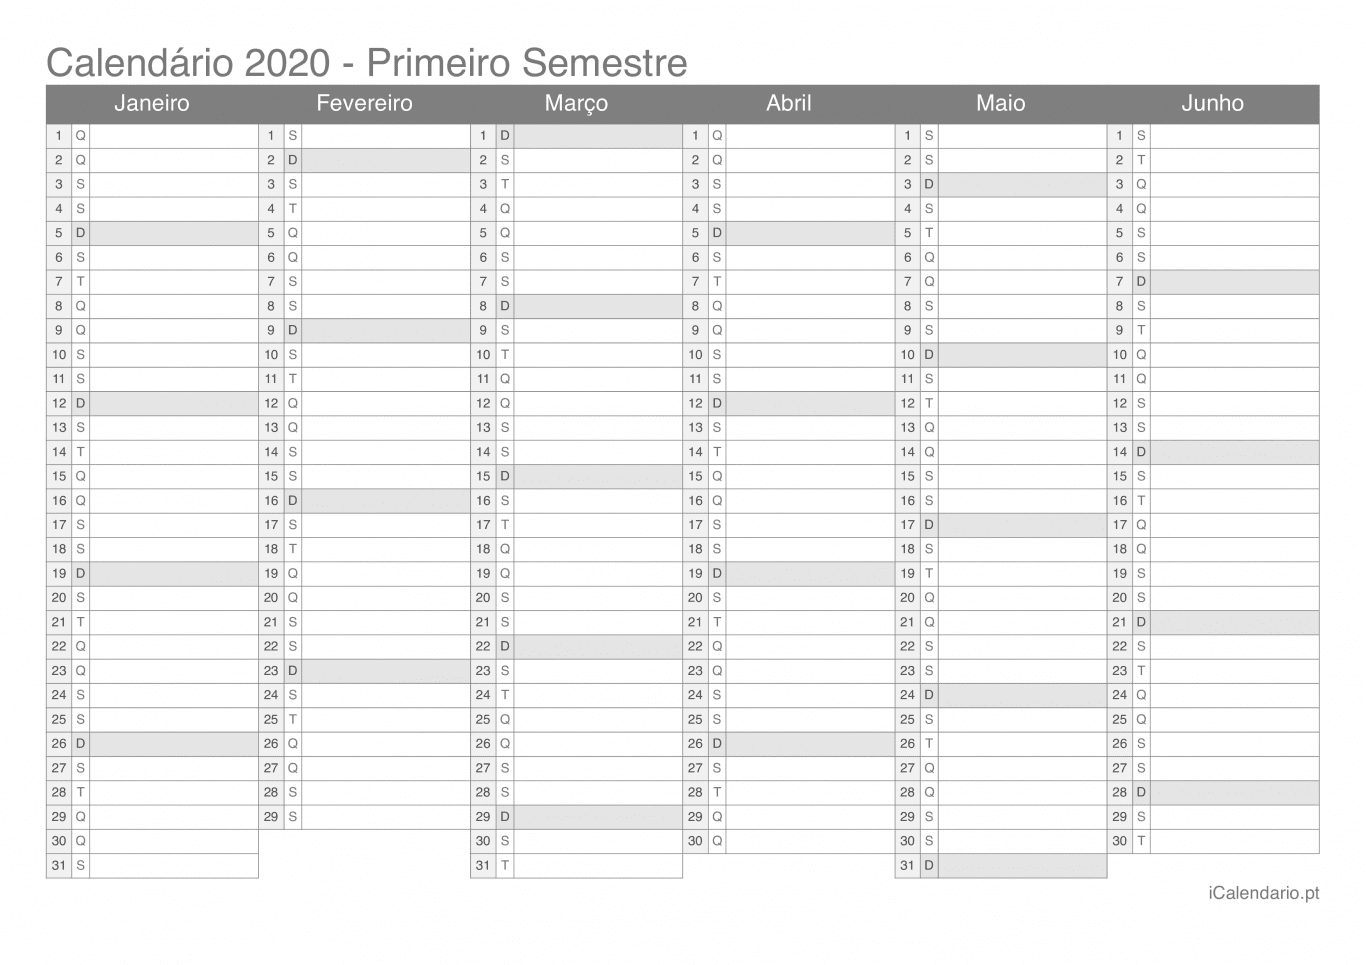 Calendário por semestre 2020